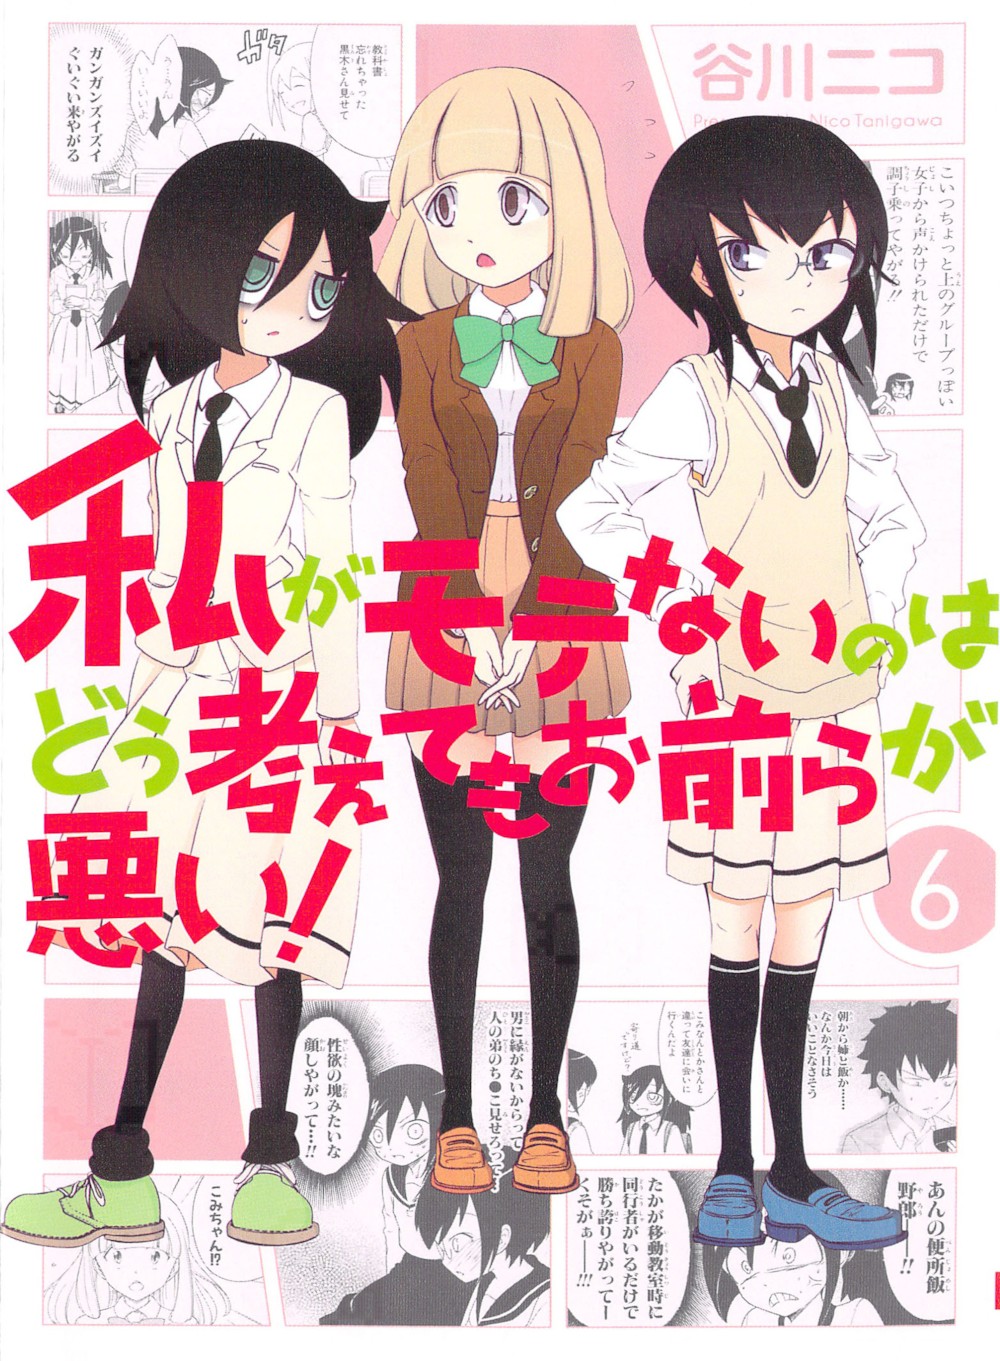 파일:WataMote_Manga_v06_cover.jpg